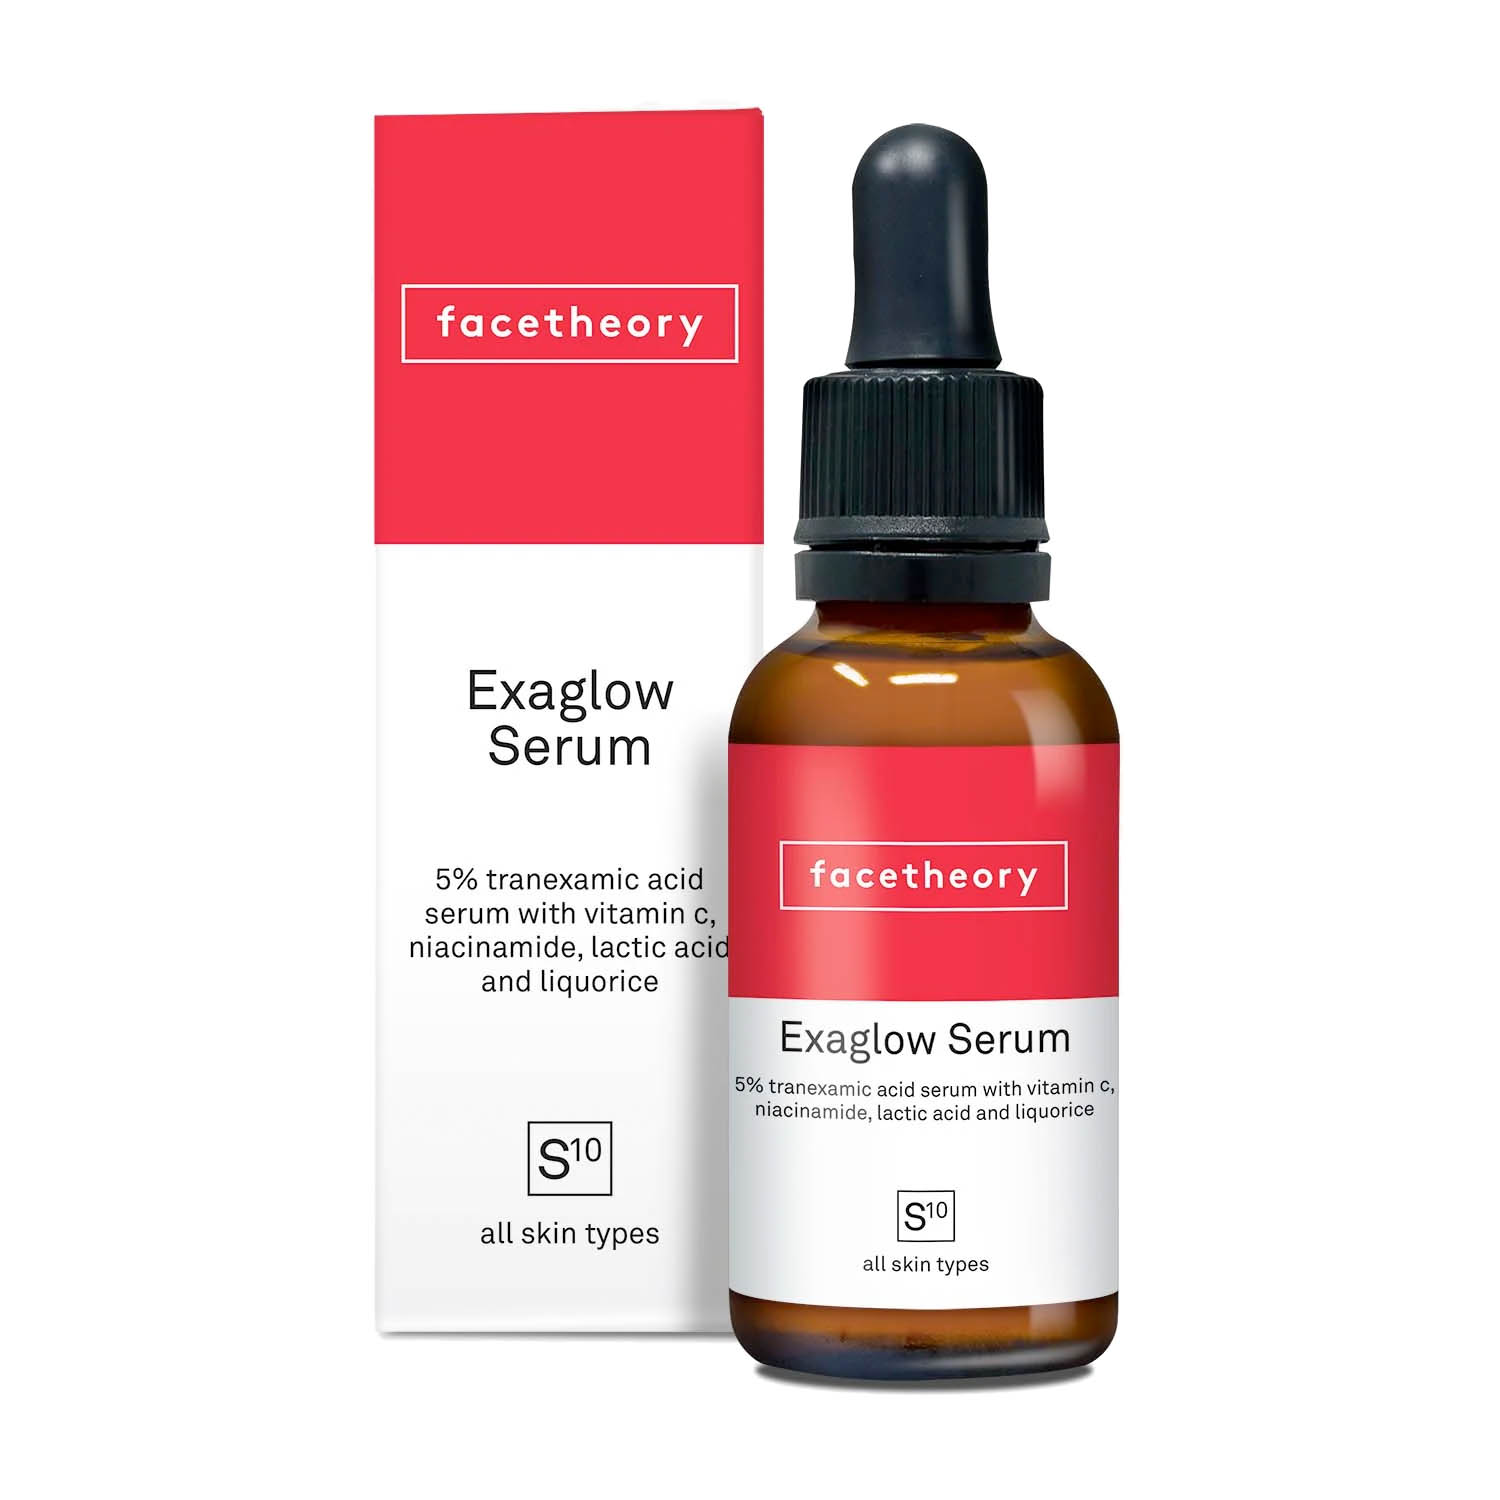 FACETHEORY Exaglow Serum S10 kaufen Deutschland bestellen Hyperpigmentation Pigmentflecken Hyperpigmentierung Treatment Tranexamic Acid Tranexamsäure Vitamin C